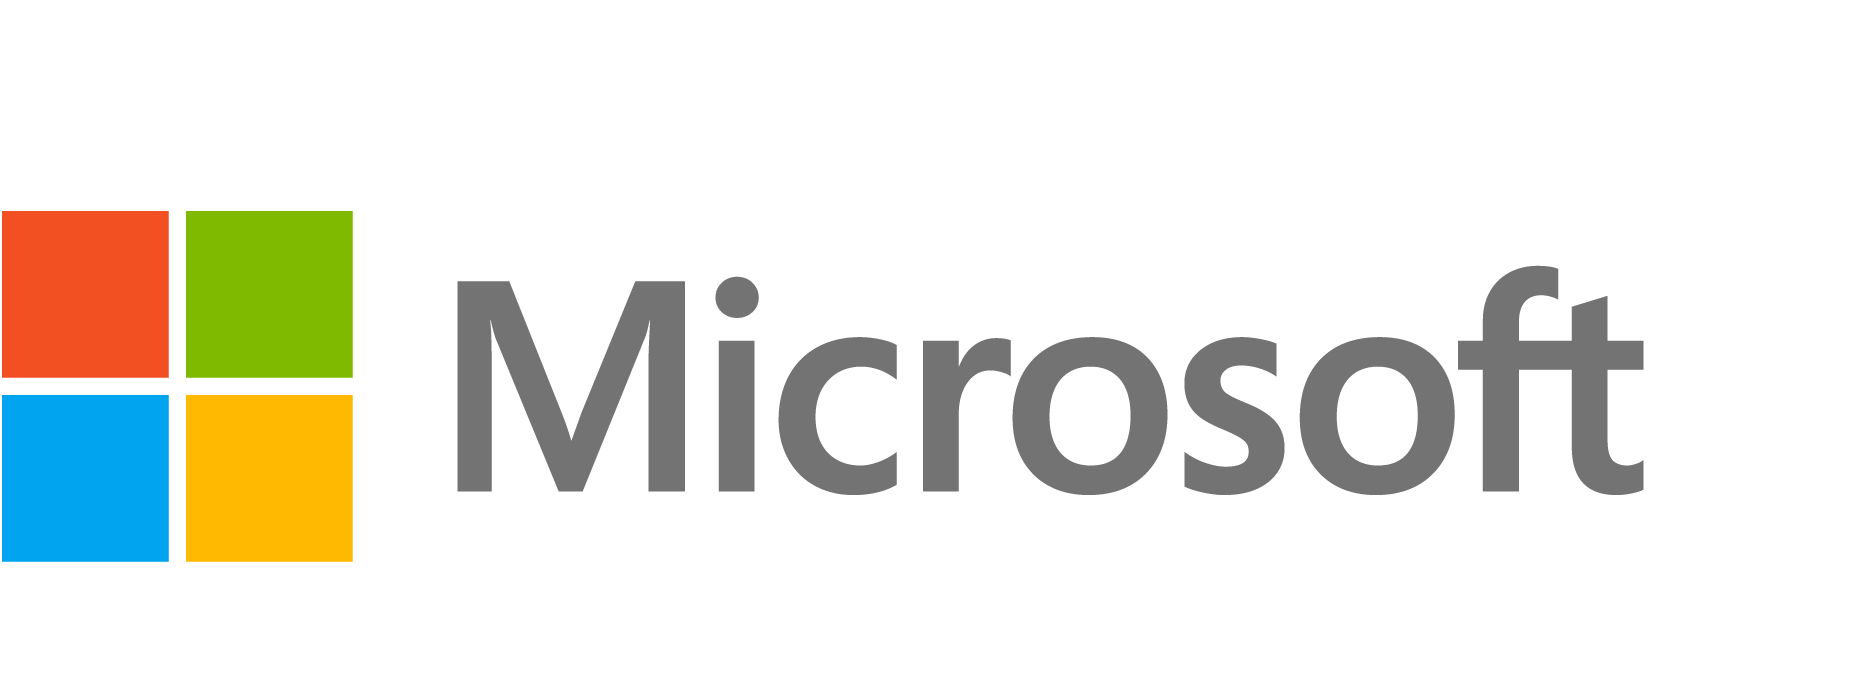 Microsoft Azure - sztuczna inteligencja